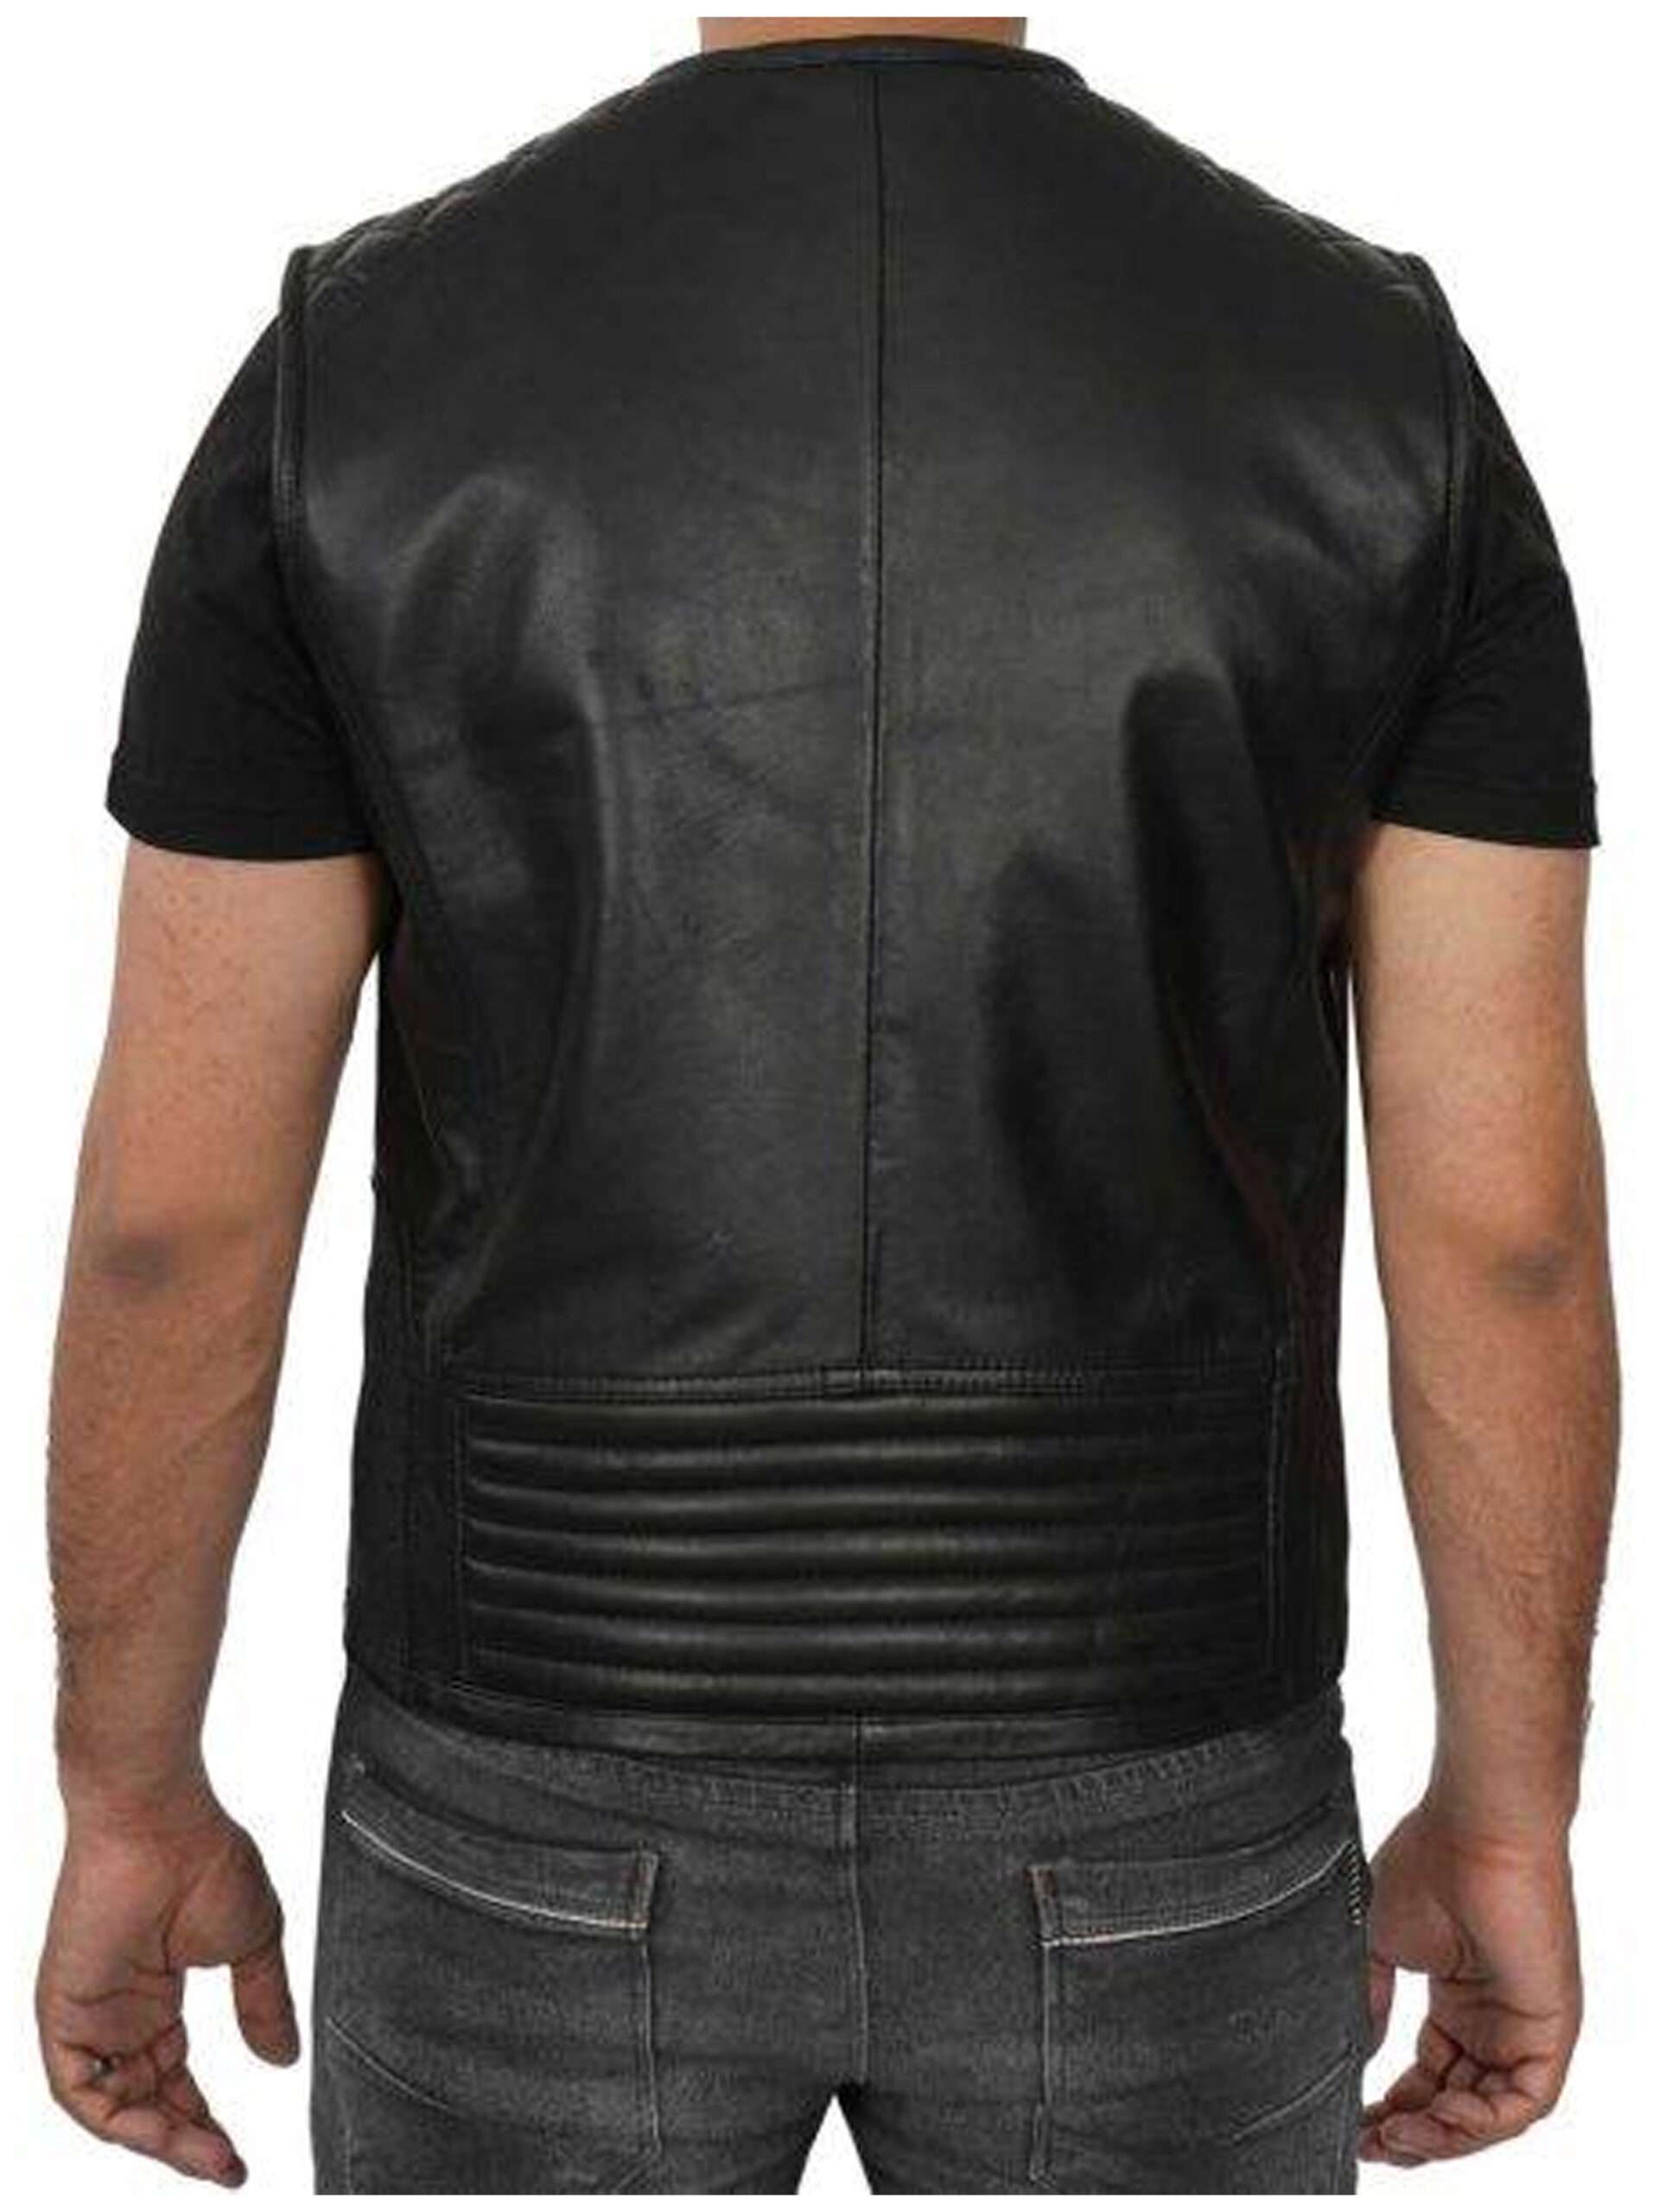 Winston Black Quilted Leather Biker Vest